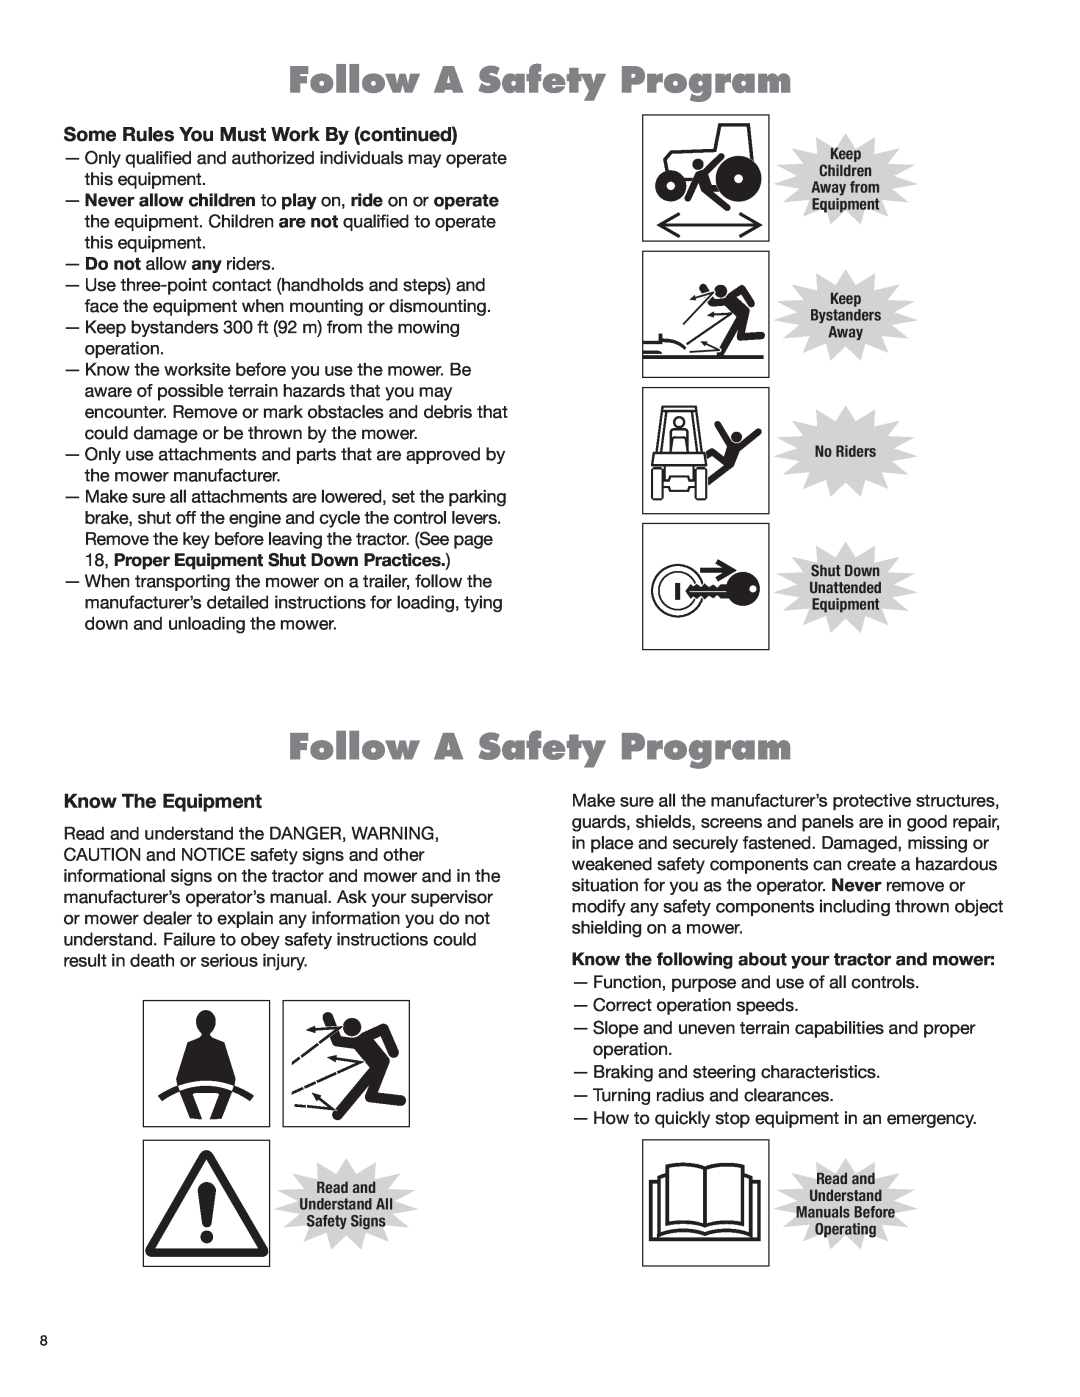 Rhino Mounts RHD88, RHD74, RHD62, RHD96 Follow A Safety Program, Some Rules You Must Work By continued, Know The Equipment 